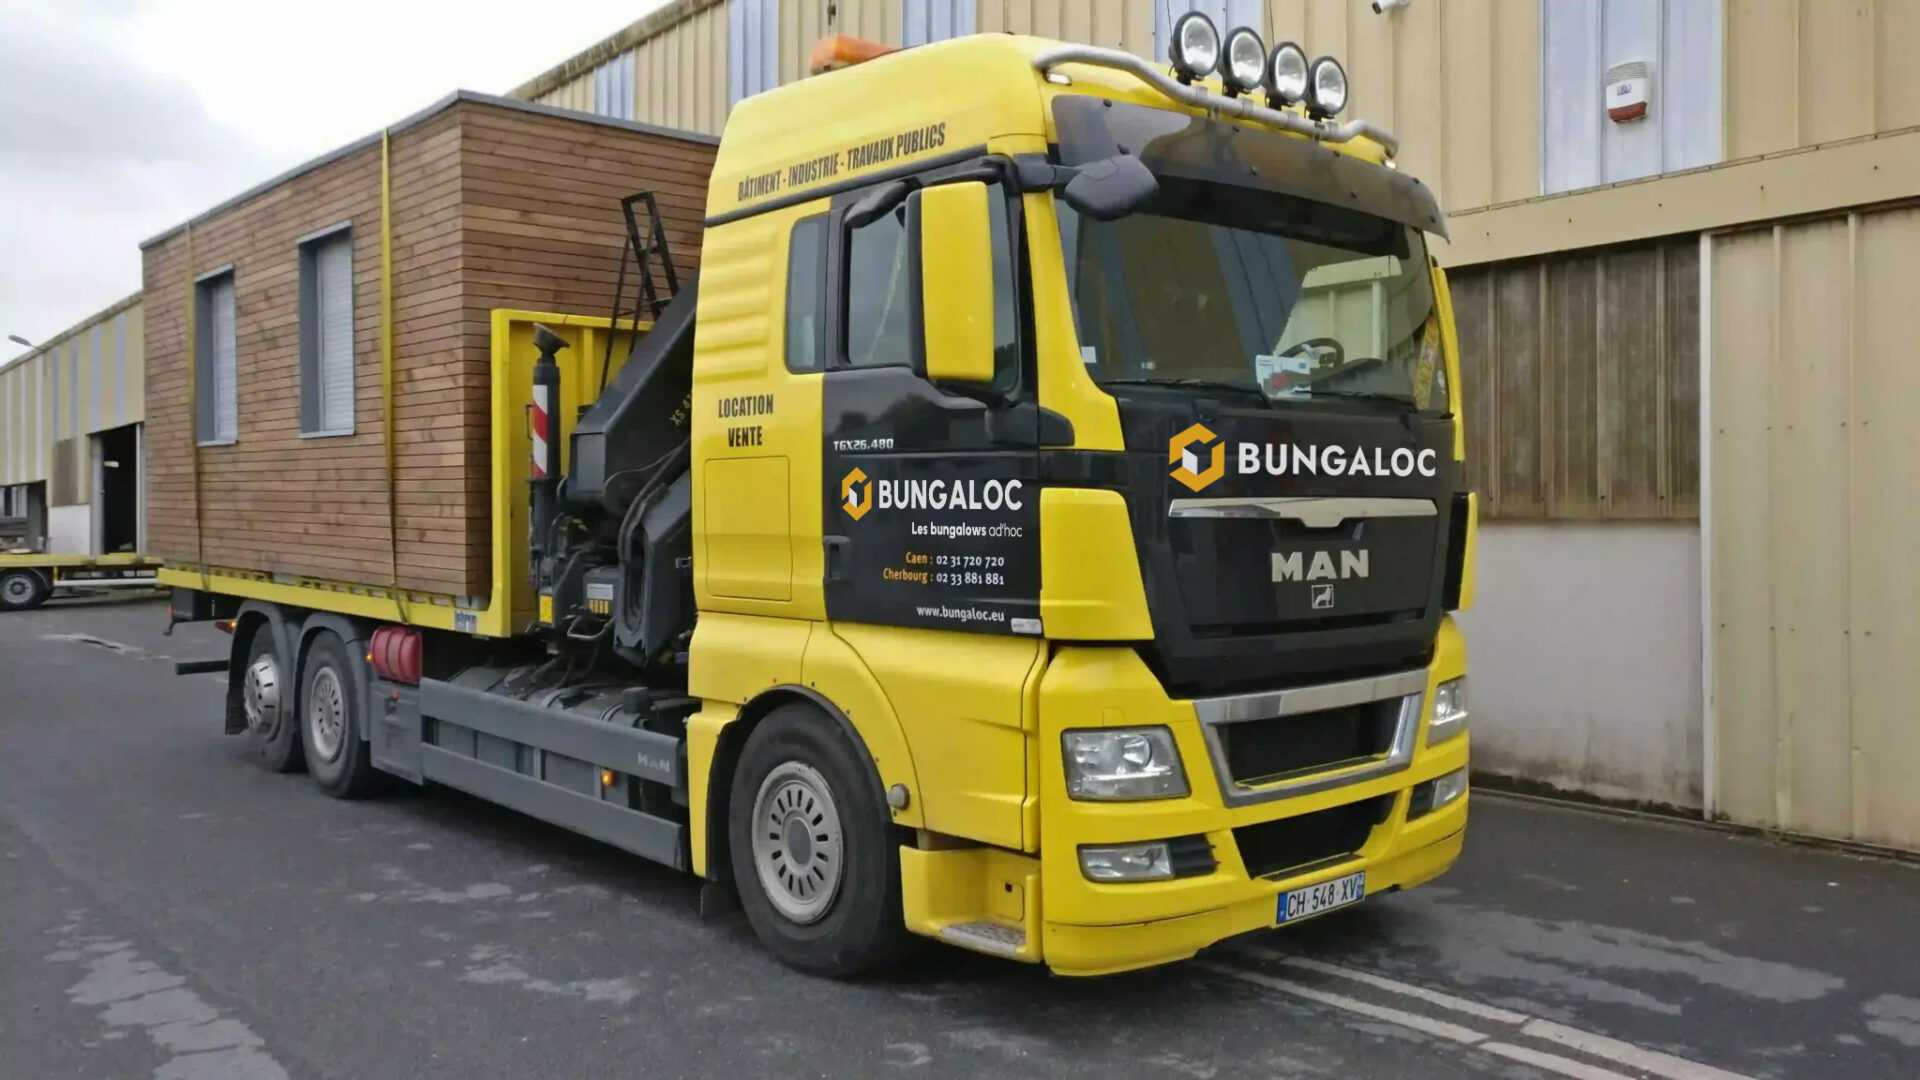 Un camion jaune Bungaloc